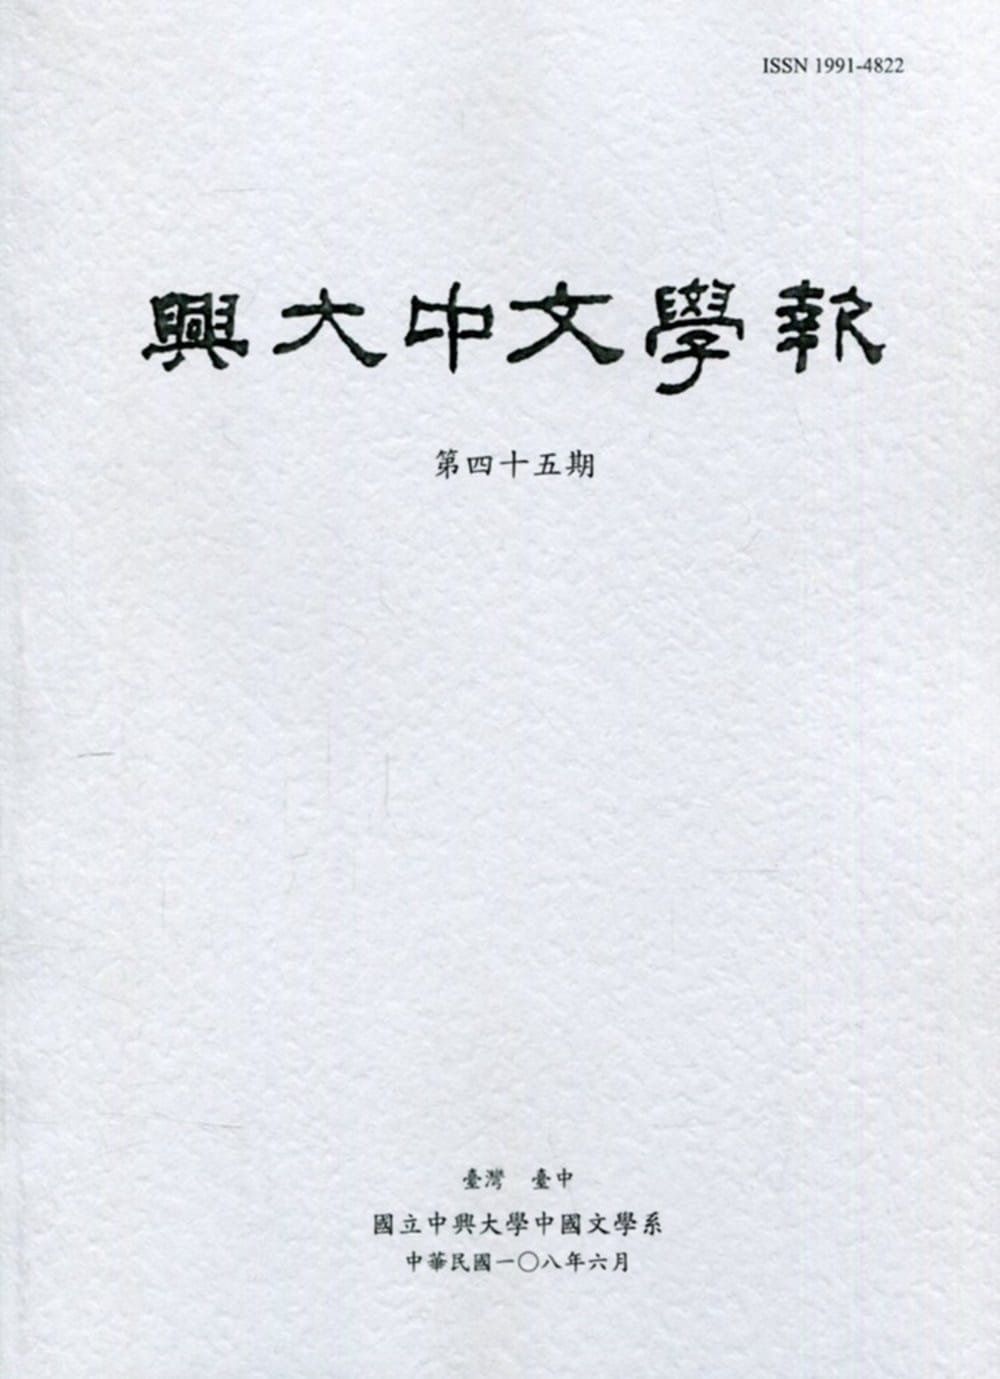 興大中文學報45期(108年6月)